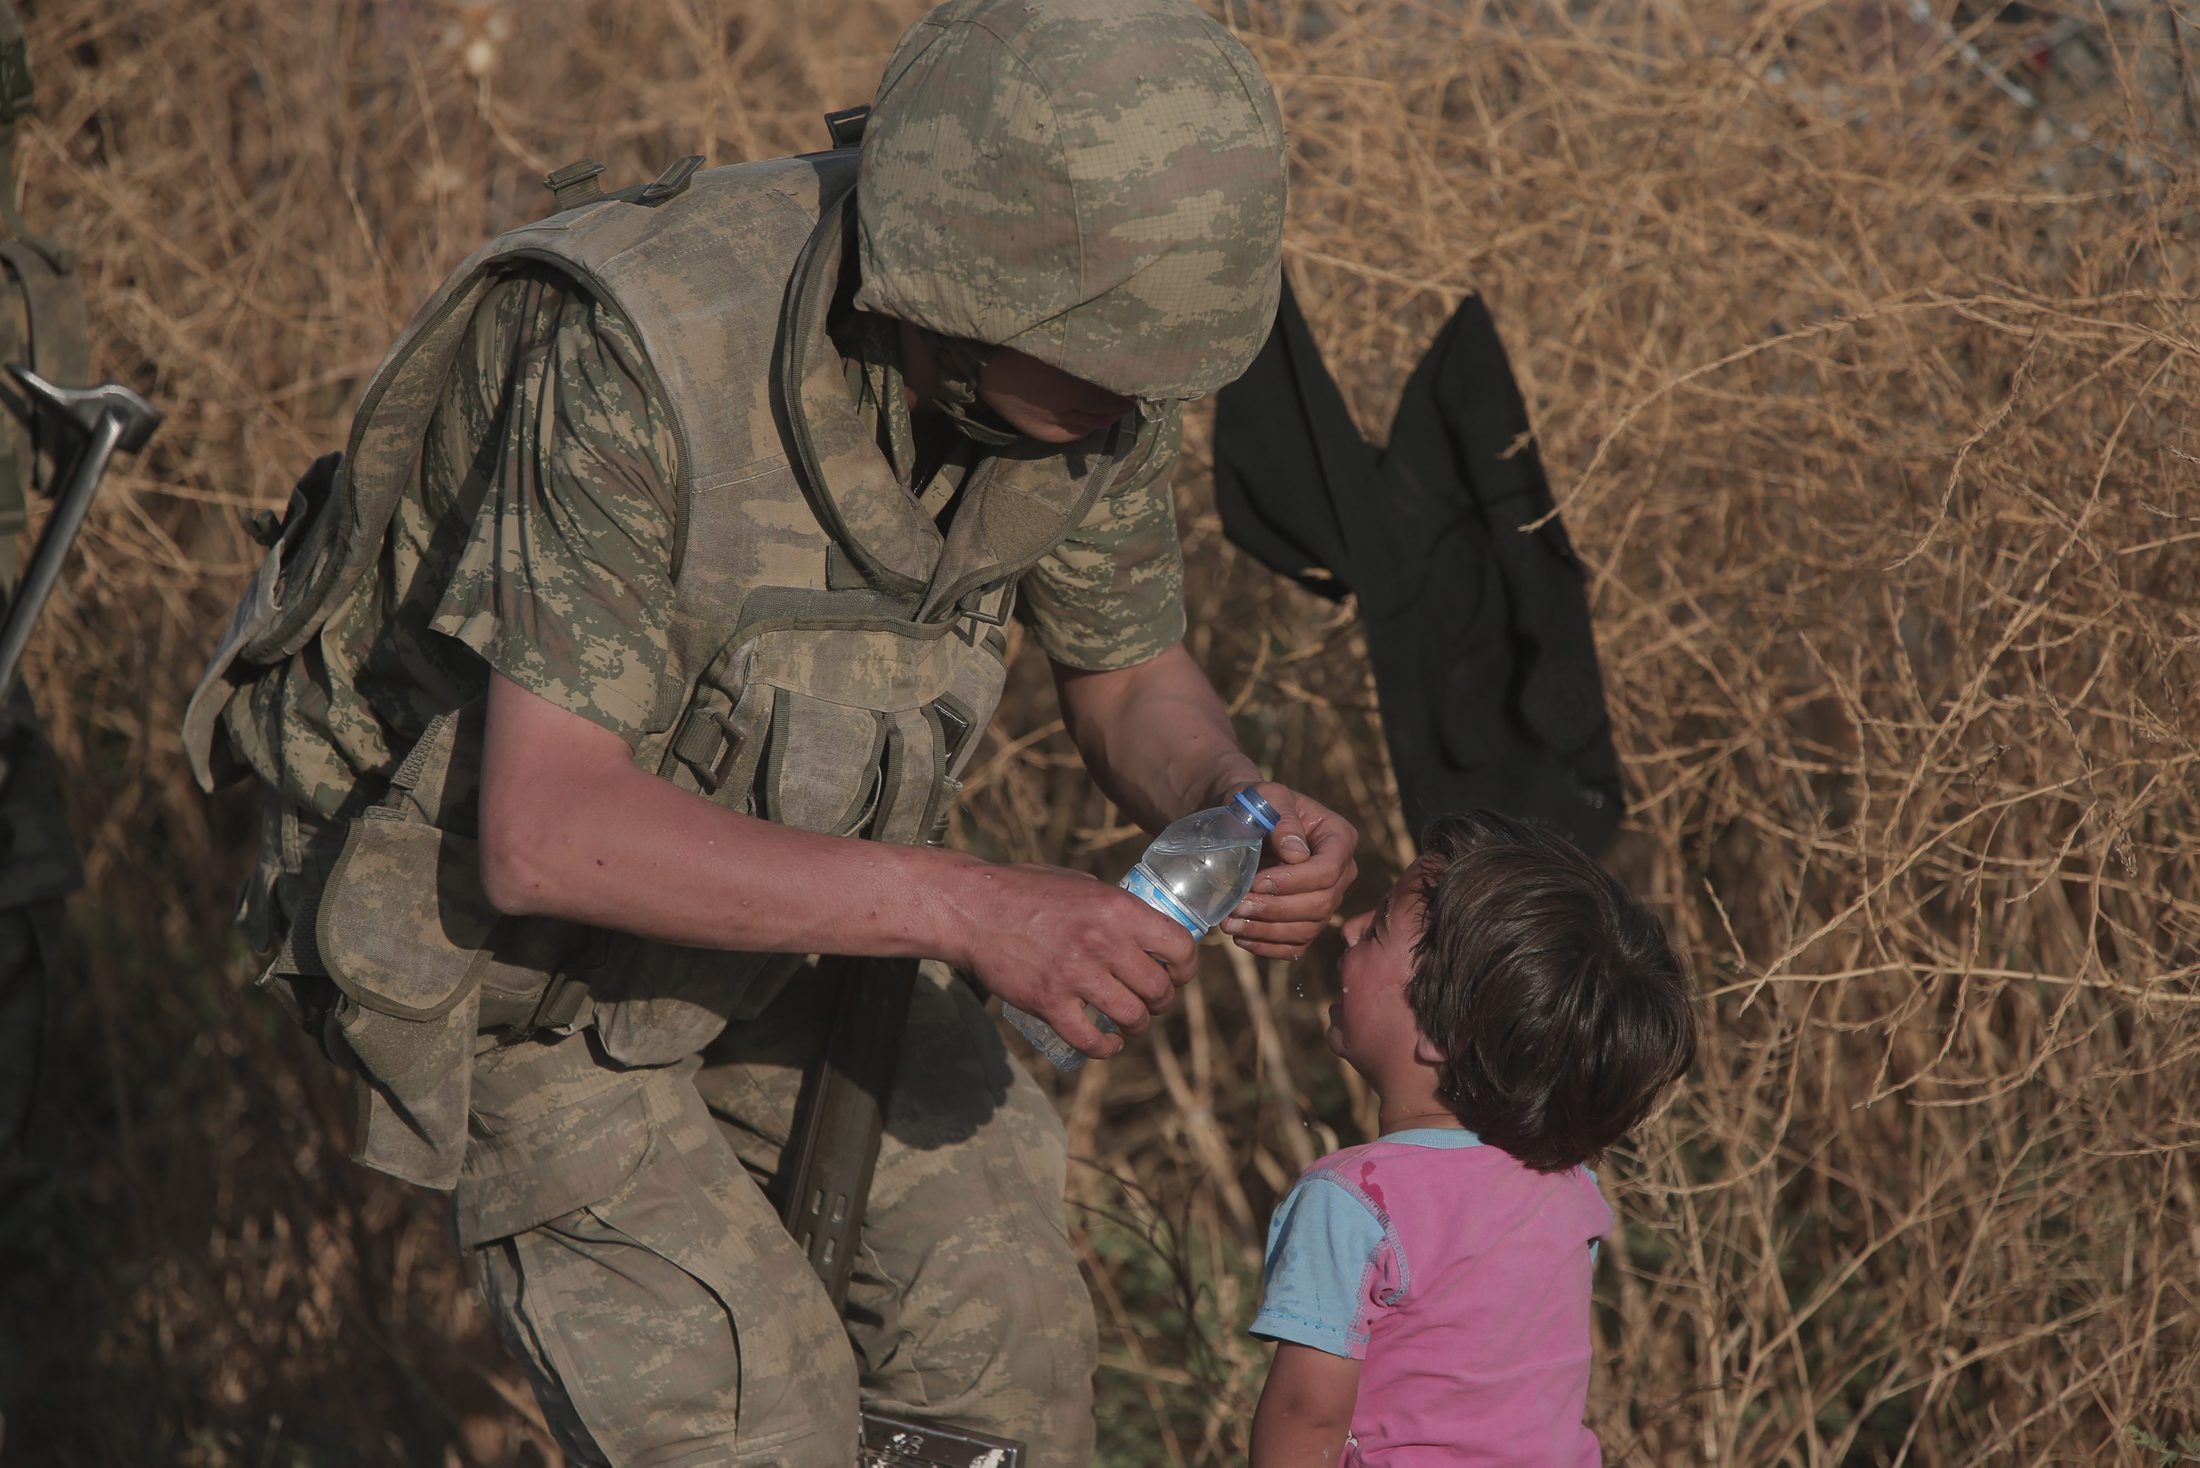 ایک ترک سپاہی پیاس سے بے حال ایک شامی بچی کو پانی پلاتے ہوئے۔ یہ بچی رواں سال جون میں سرحد عبور کرکے ترکی کے جنوب مشرقی صوبے شانلی عرفہ میں داخل ہونے والے ہزاروں شامی باشندوں میں سےایک تھی۔ 